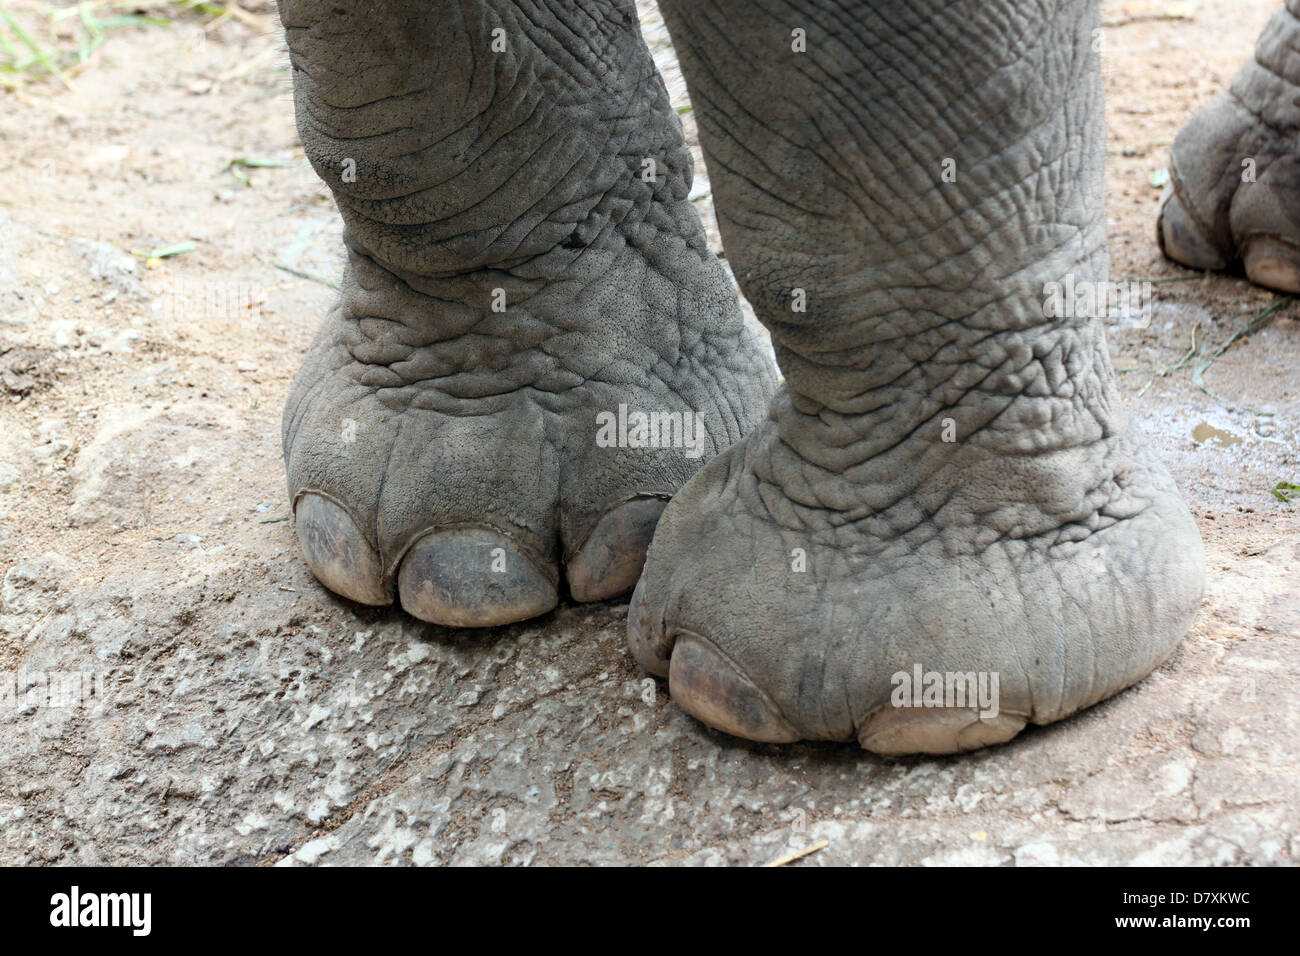 Los elefantes asiáticos' pies sanos. Foto de stock